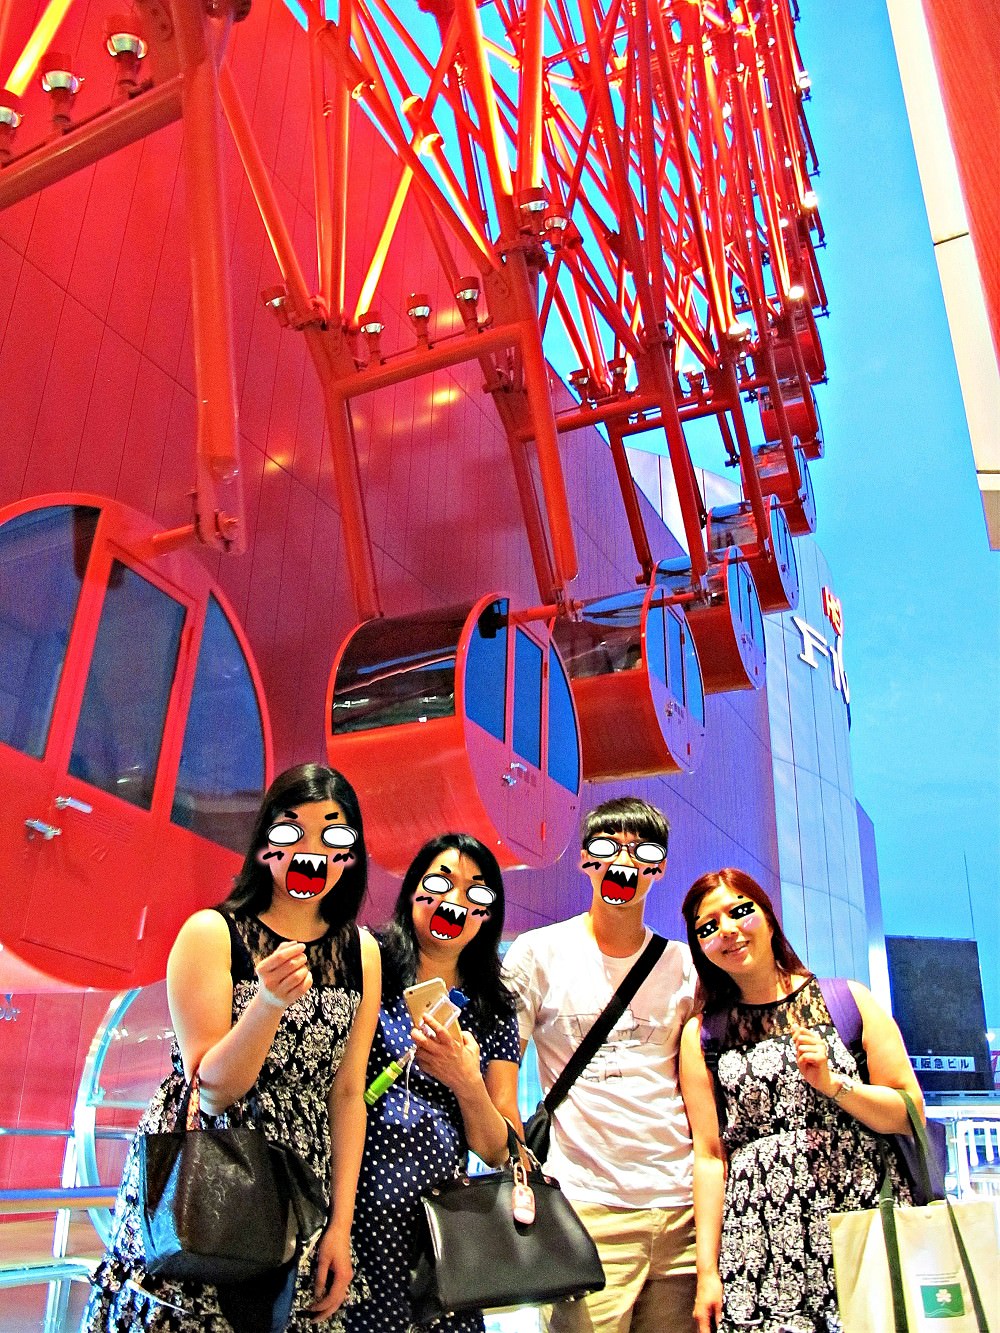 HEP FIVE 摩天輪：必去！大阪周遊卡免費景點，紅色亮眼，日落夜景好迷人！